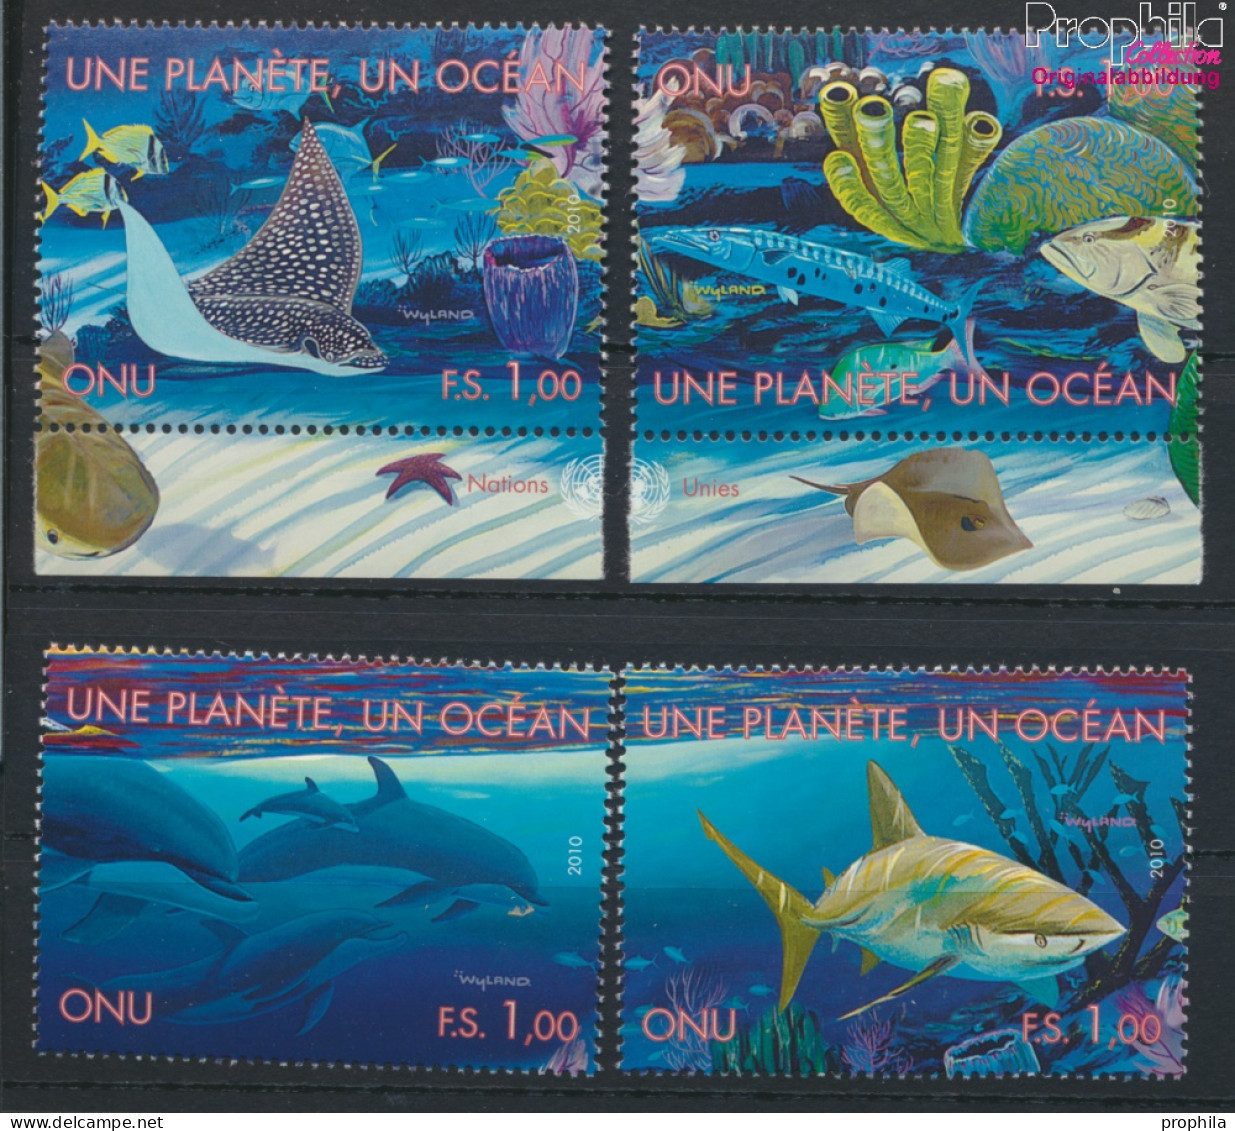 UNO - Genf 691-694 (kompl.Ausg.) Postfrisch 2010 Ozean (10054262 - Unused Stamps